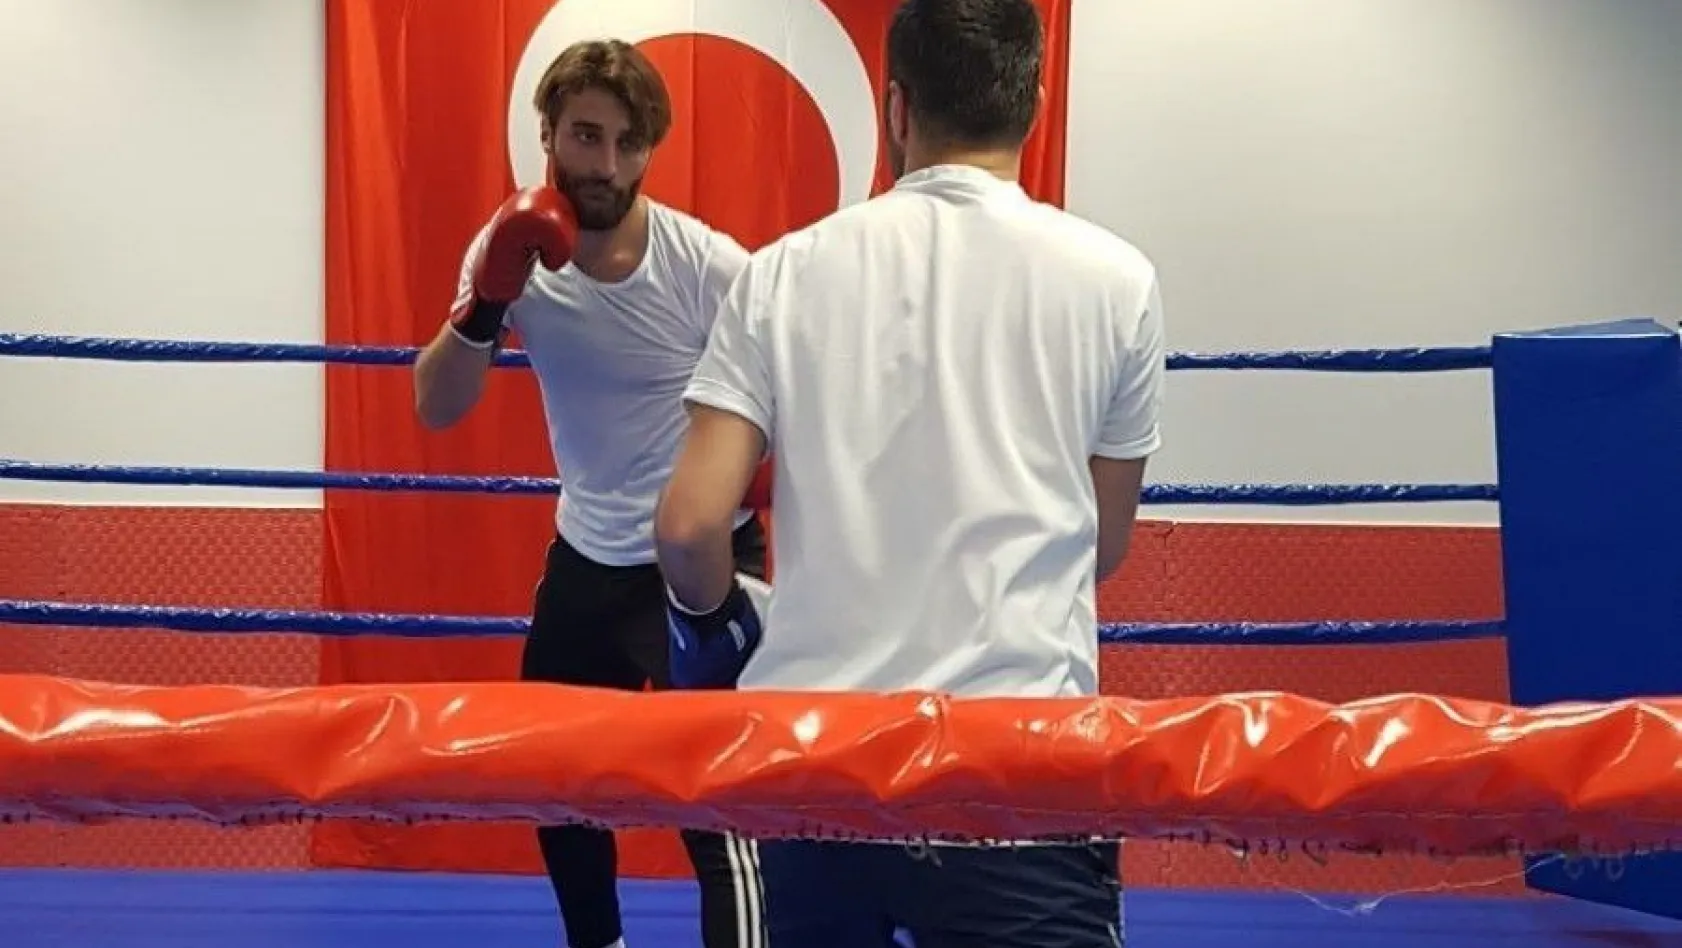 Elazığsporlu Alpaslan ile milli boksör Yakup Kılıç, ringde karşılaştı